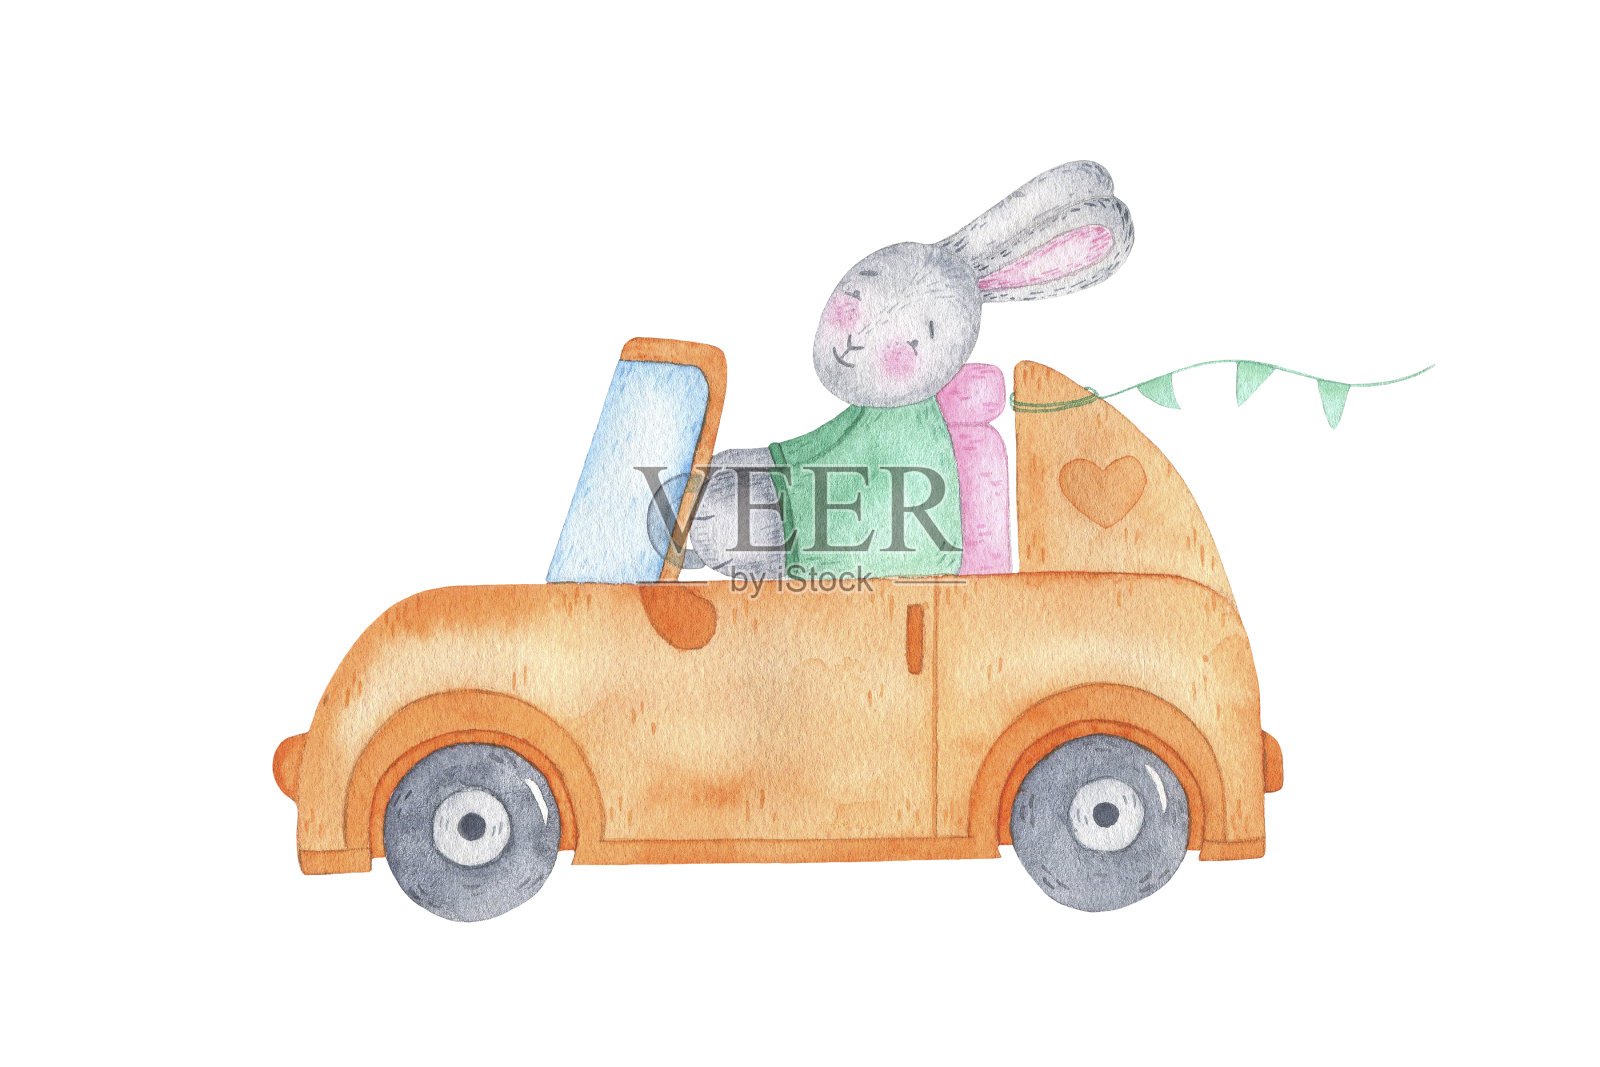 水彩画复活节快乐兔子兔子车上插画图片素材